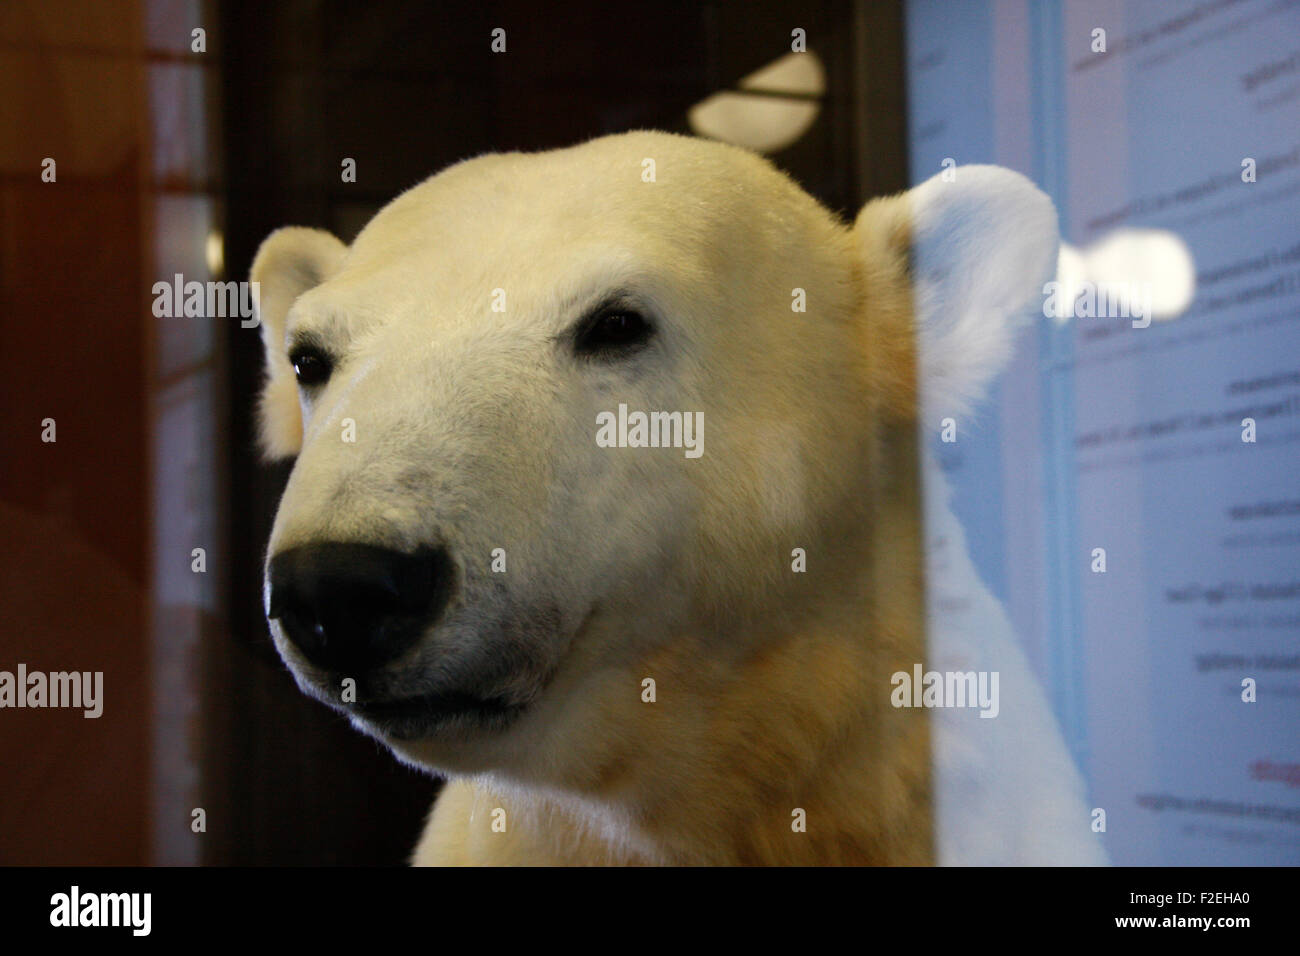 der geliebte Berliner Eisbaer Knut, der vor 2 Jahren verstorben war, als 'Dermoplastik', modelliert mit dem echten Fell des Baer Stock Photo